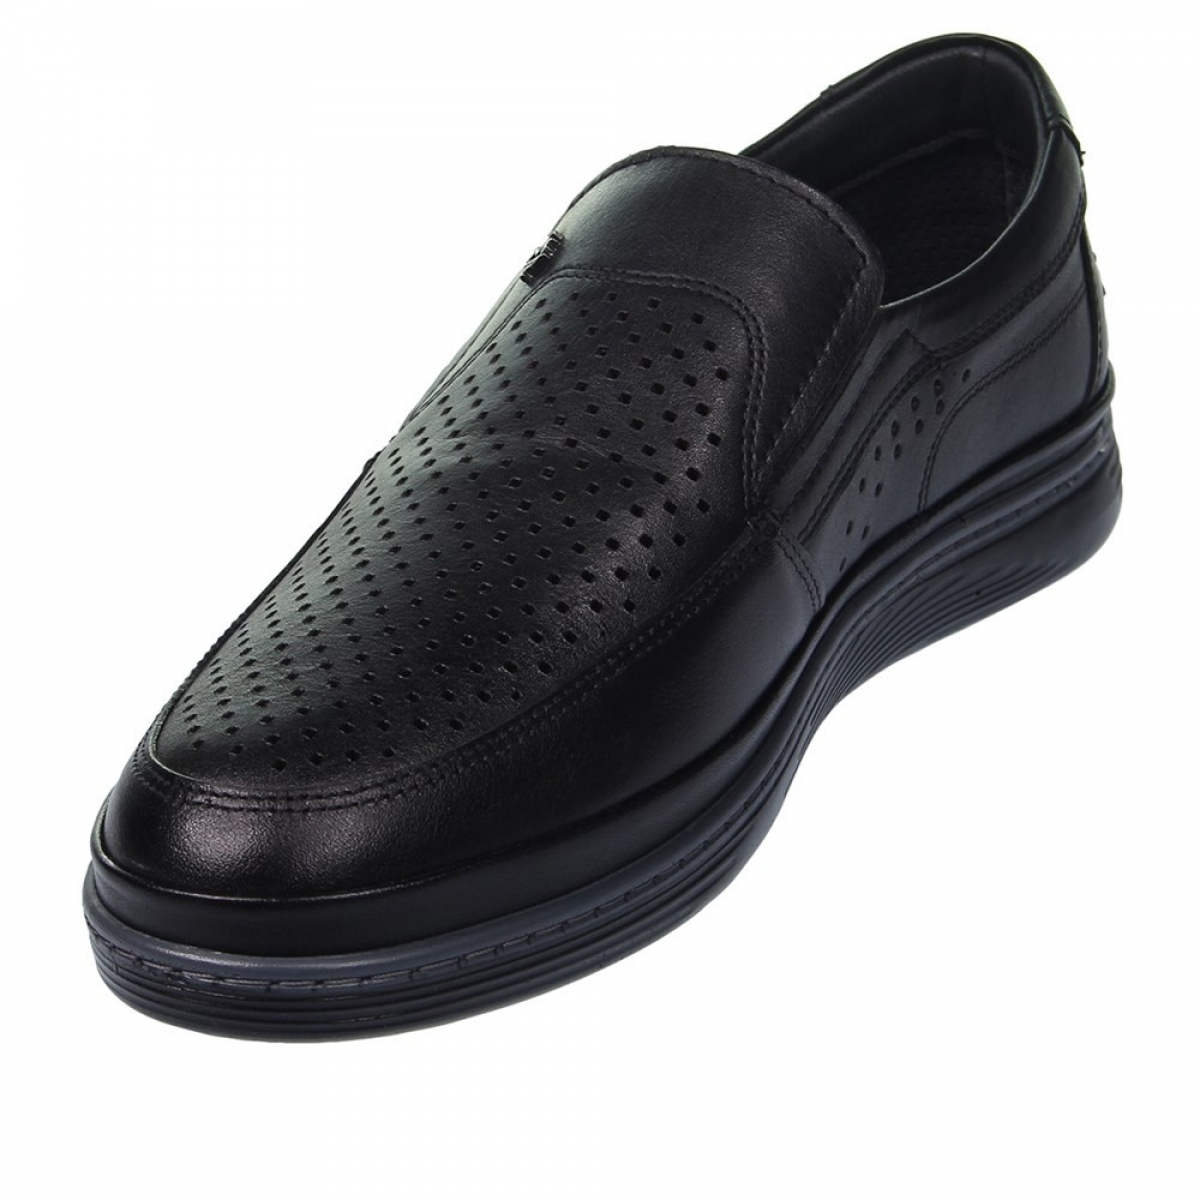 Flo Erkek Deri Siyah Casual Ayakkabı 211-4207MR 100. 2